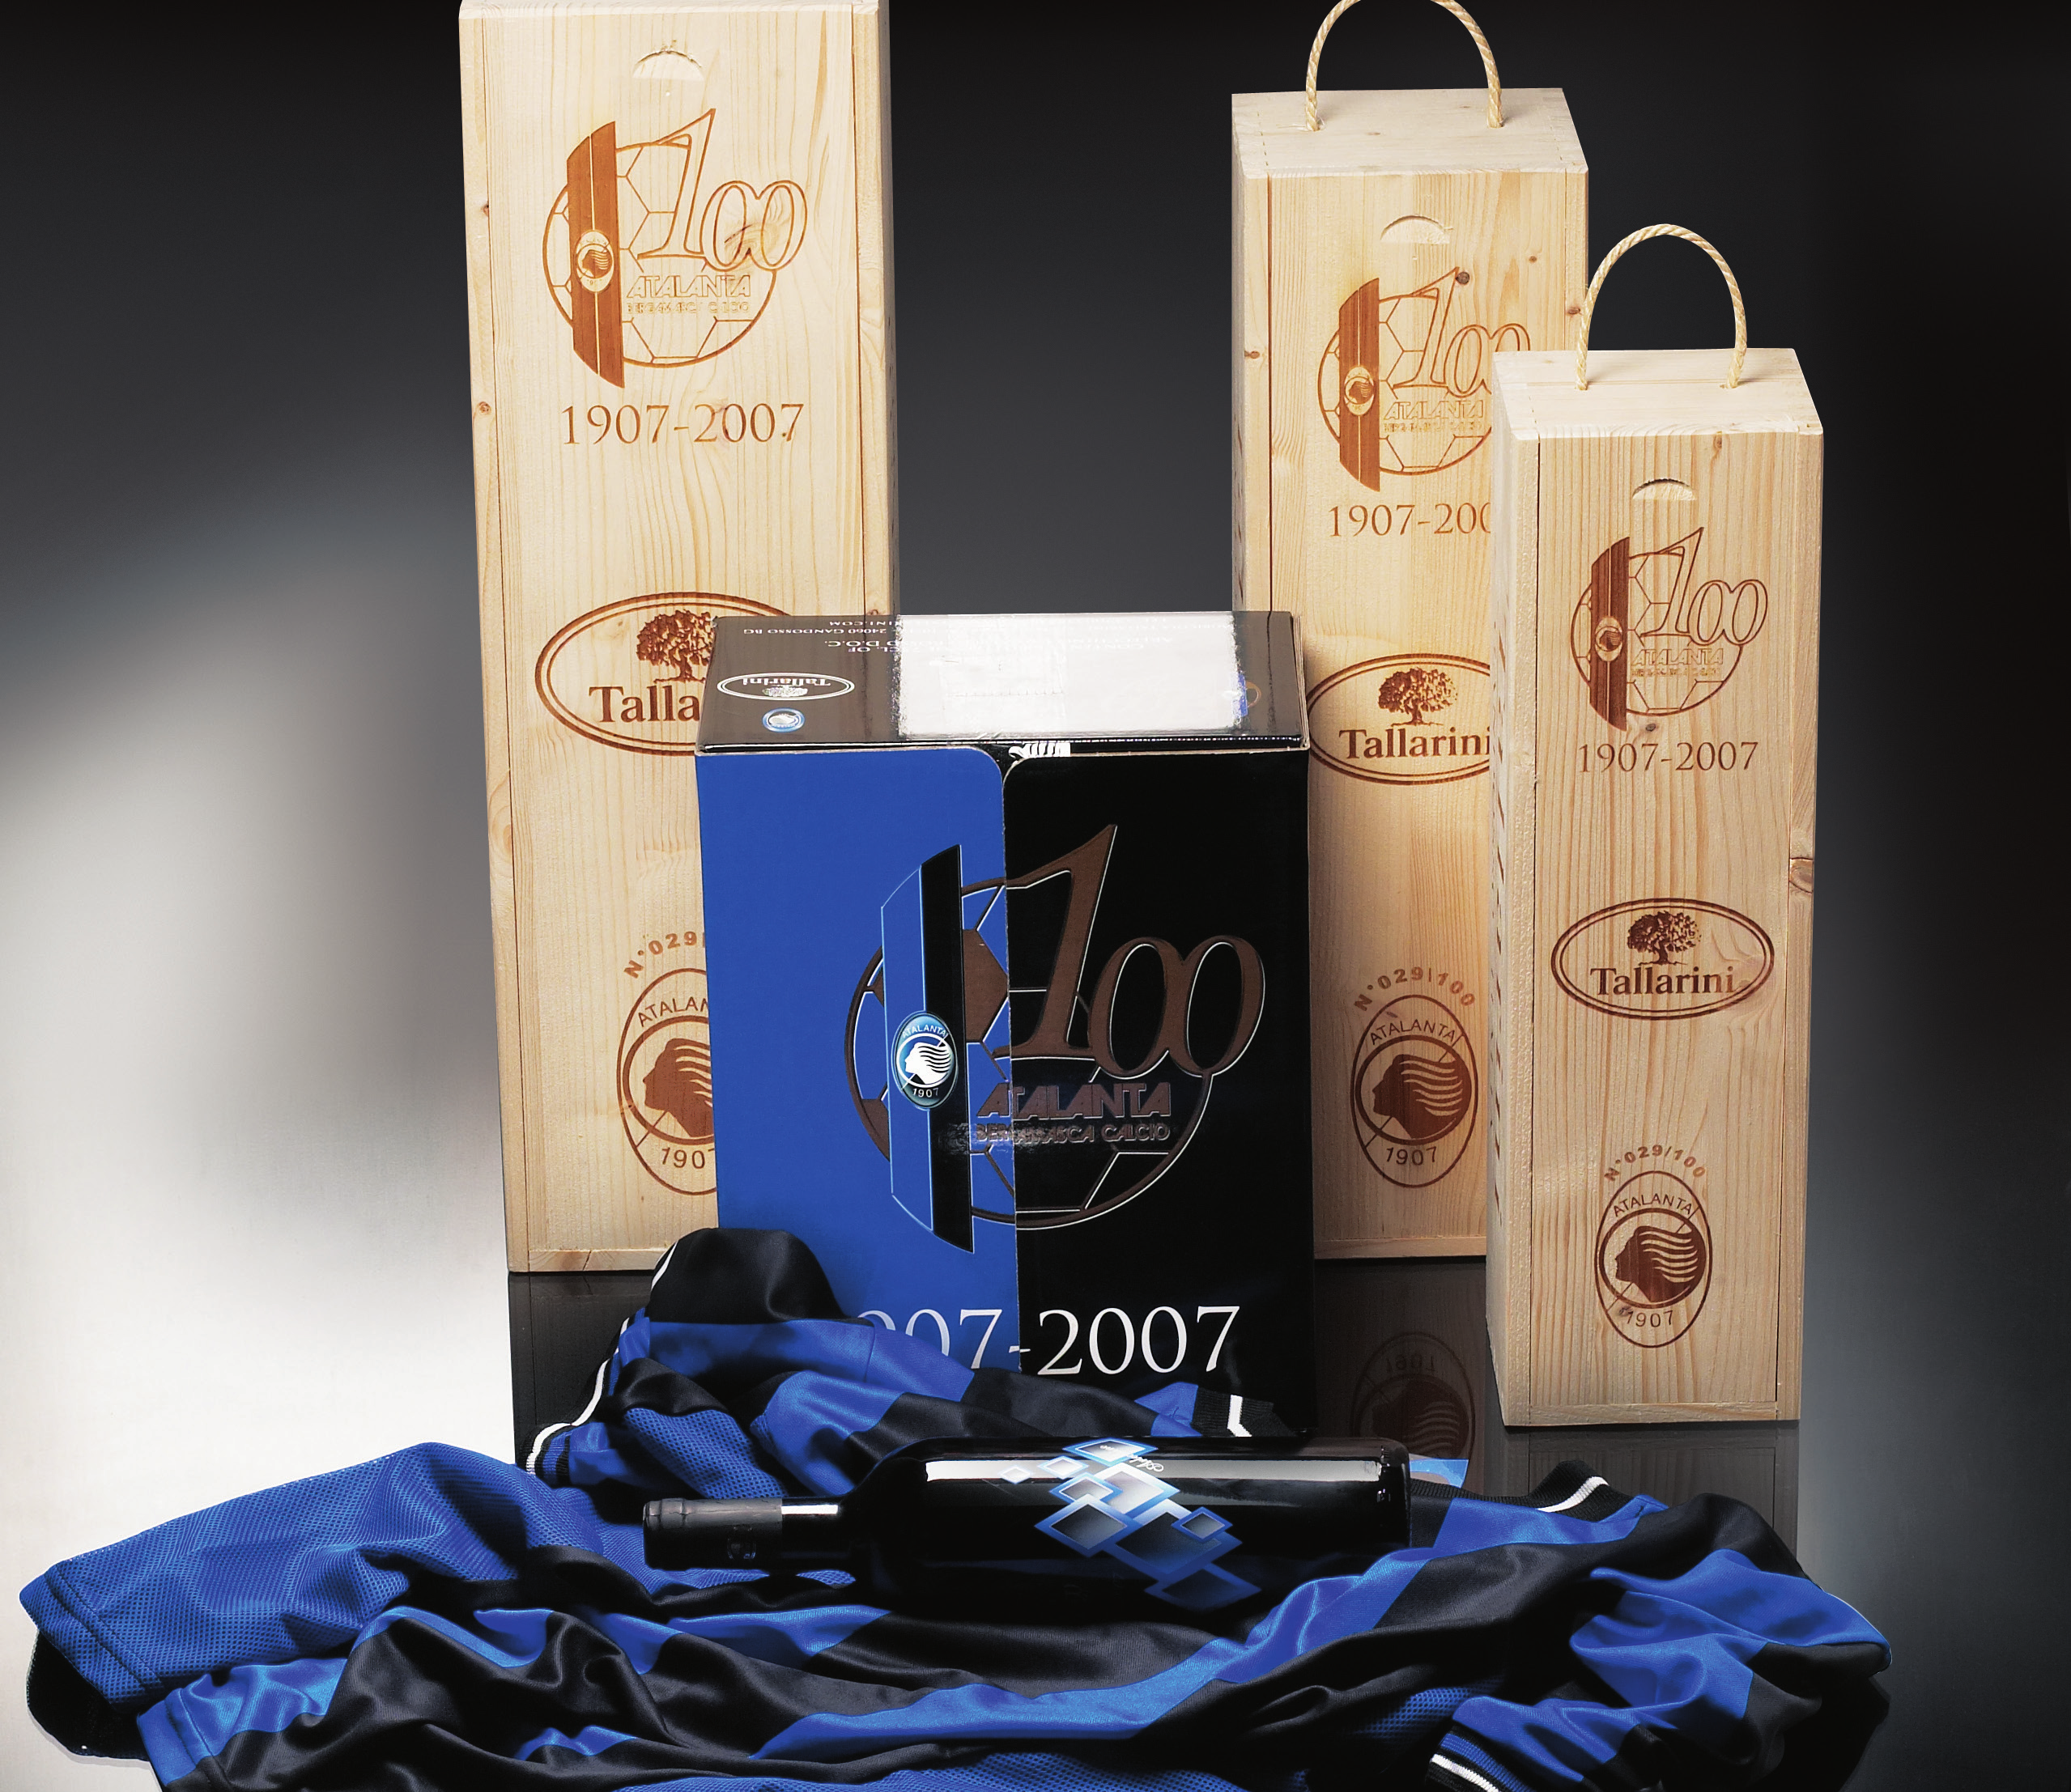 Collezione Centenario Atalanta 08.A cassetta in legno contenente una bottiglia di Valcalepio Doc Rosso - Selezione Centenario Atalanta da lt 1,50 08.